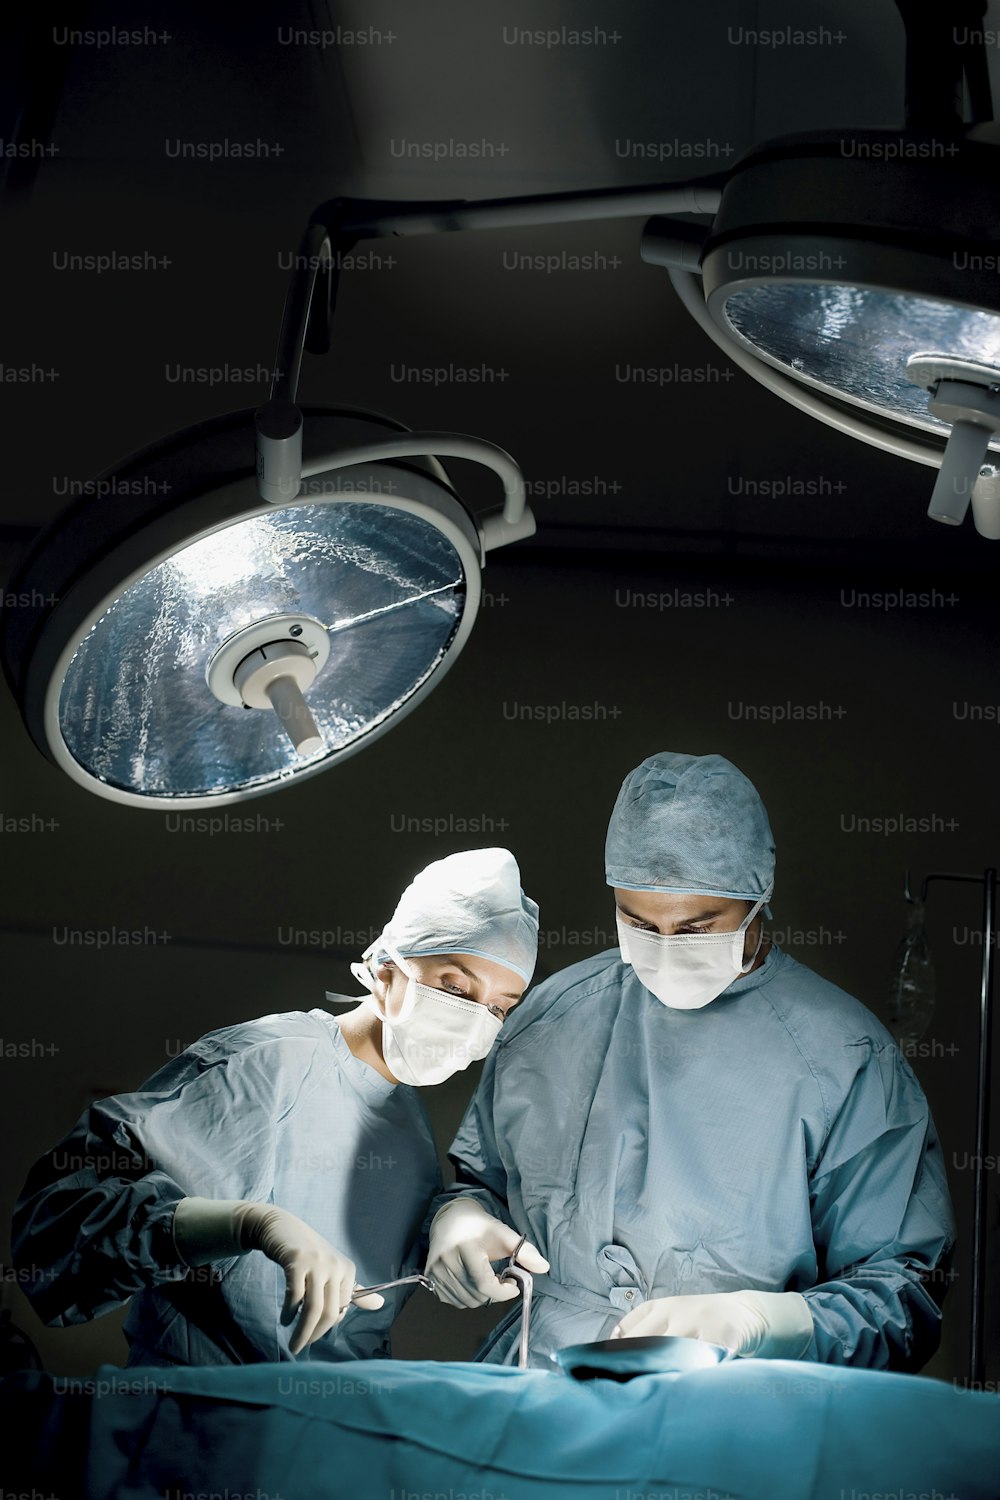 dois cirurgiões operando um paciente em uma sala de cirurgia